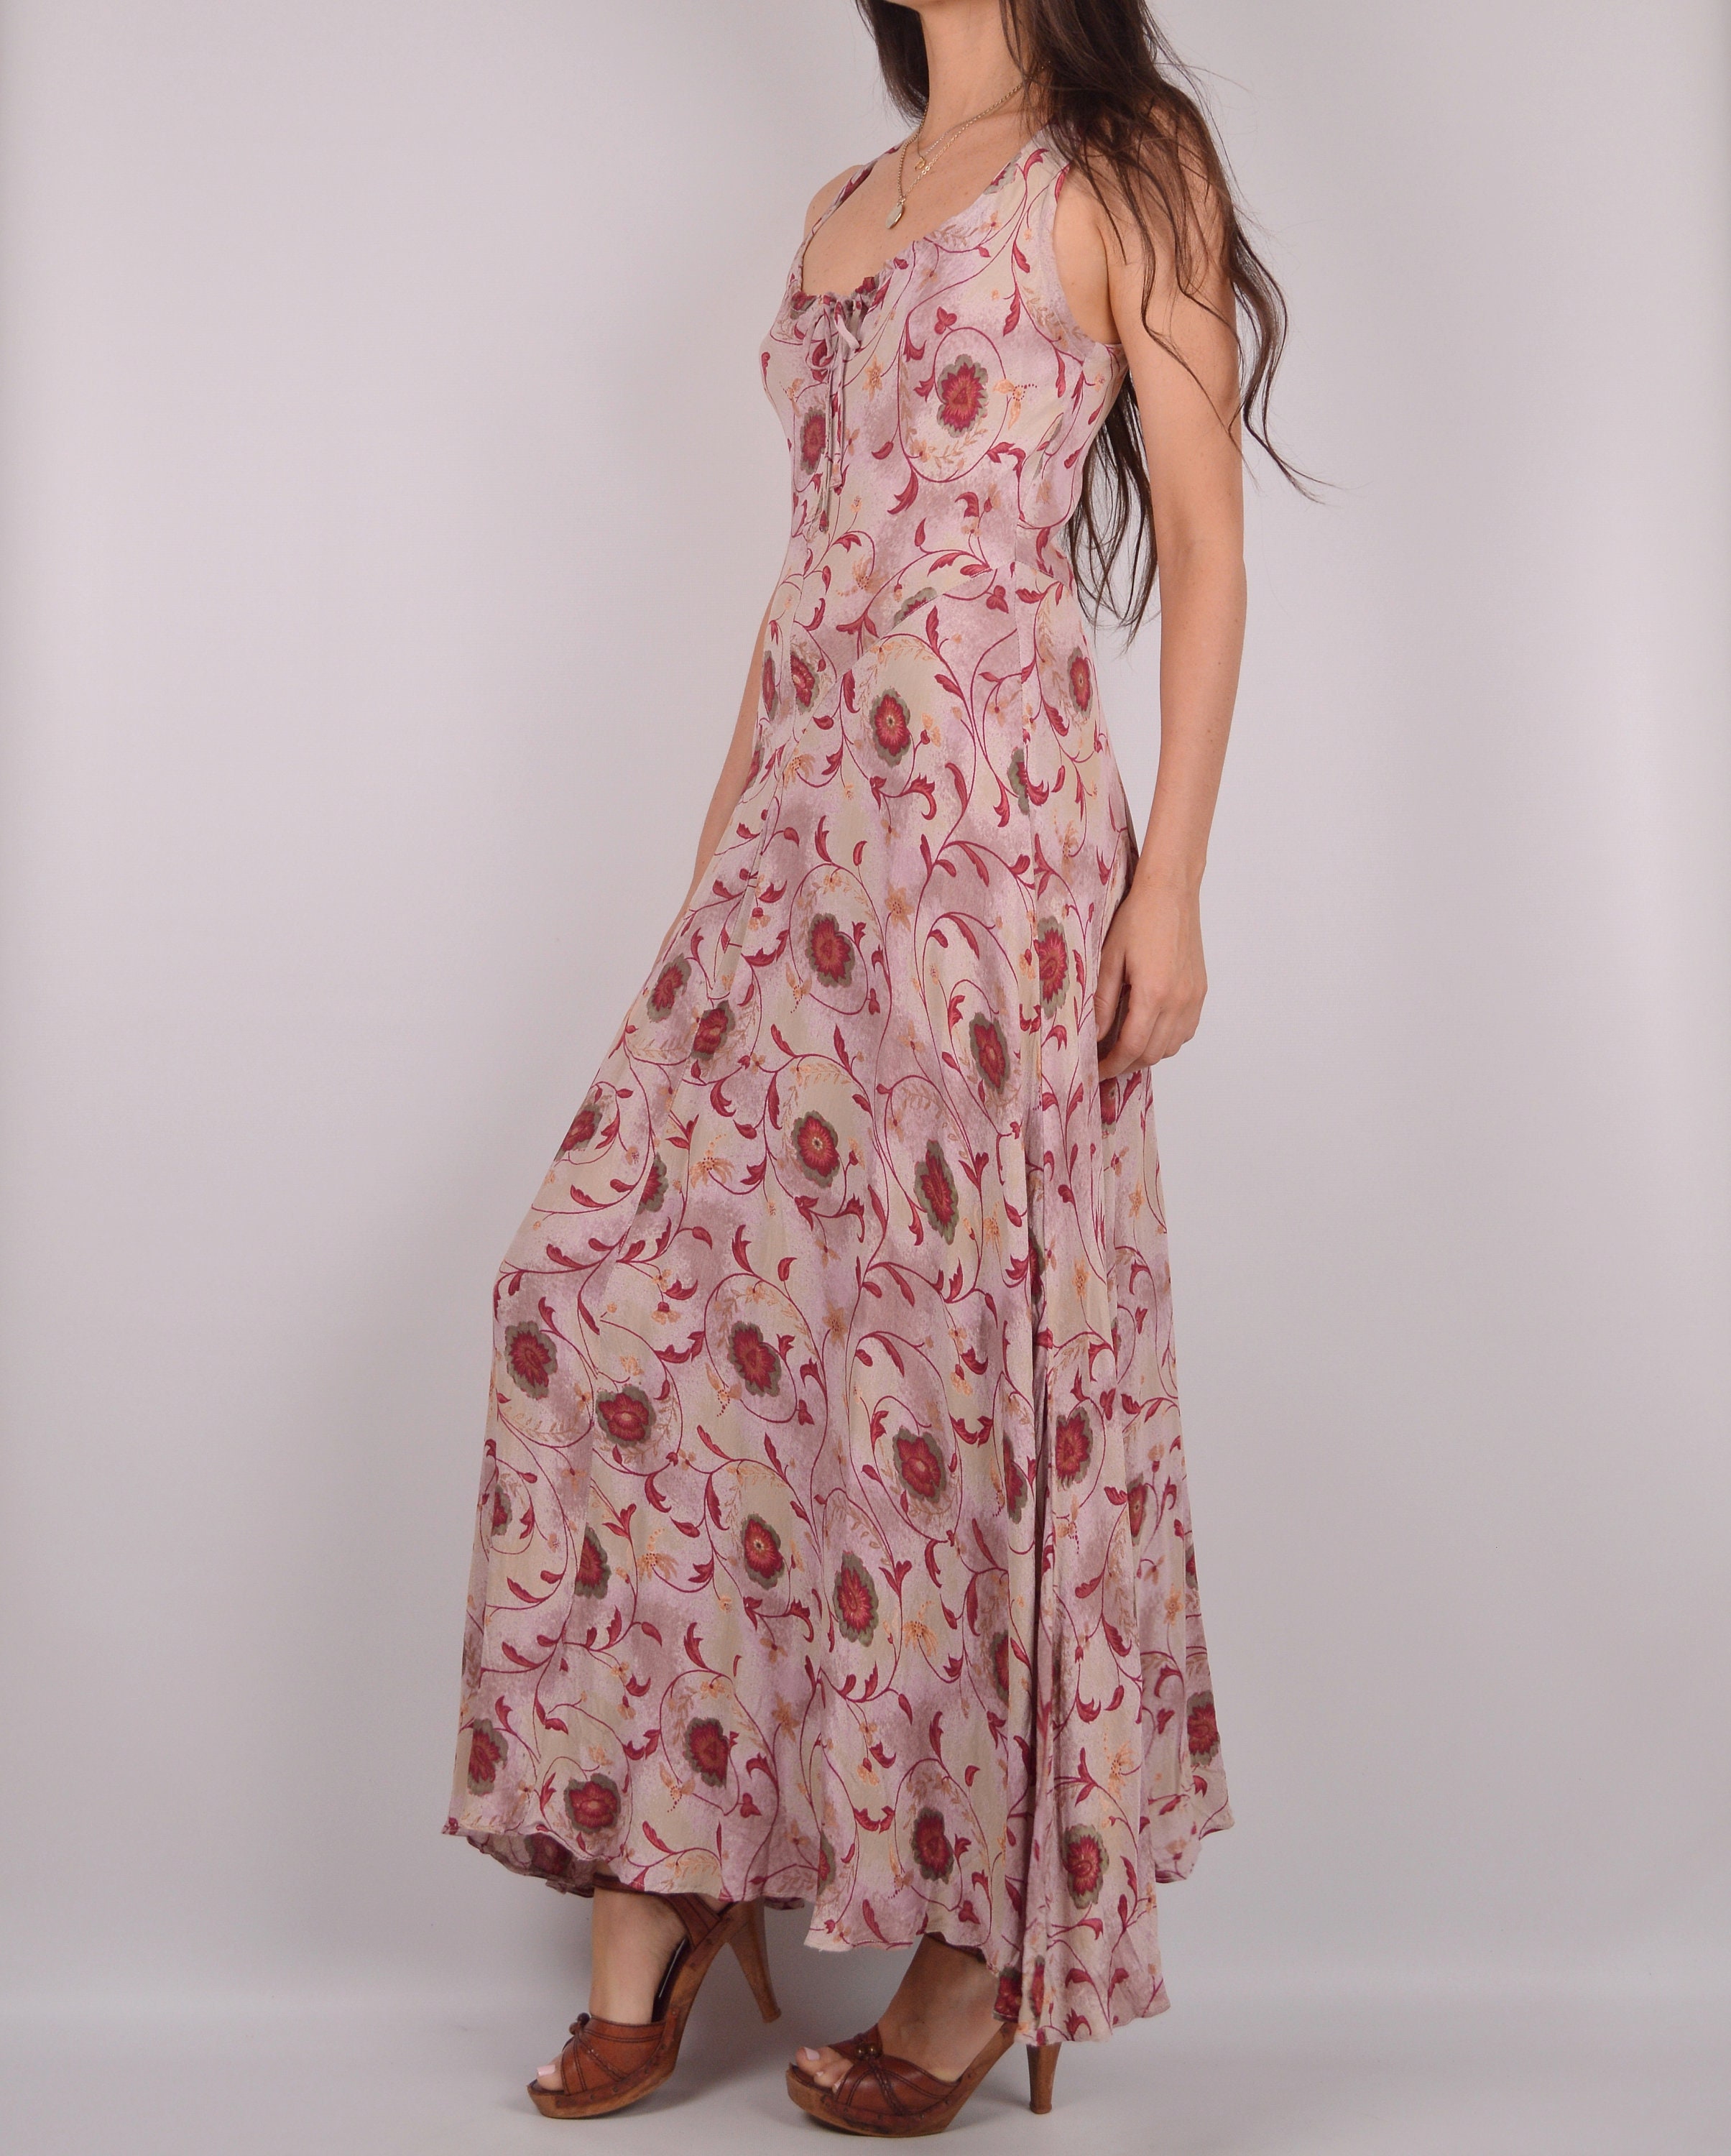 Romantic Vintage Floral Maxi Dress